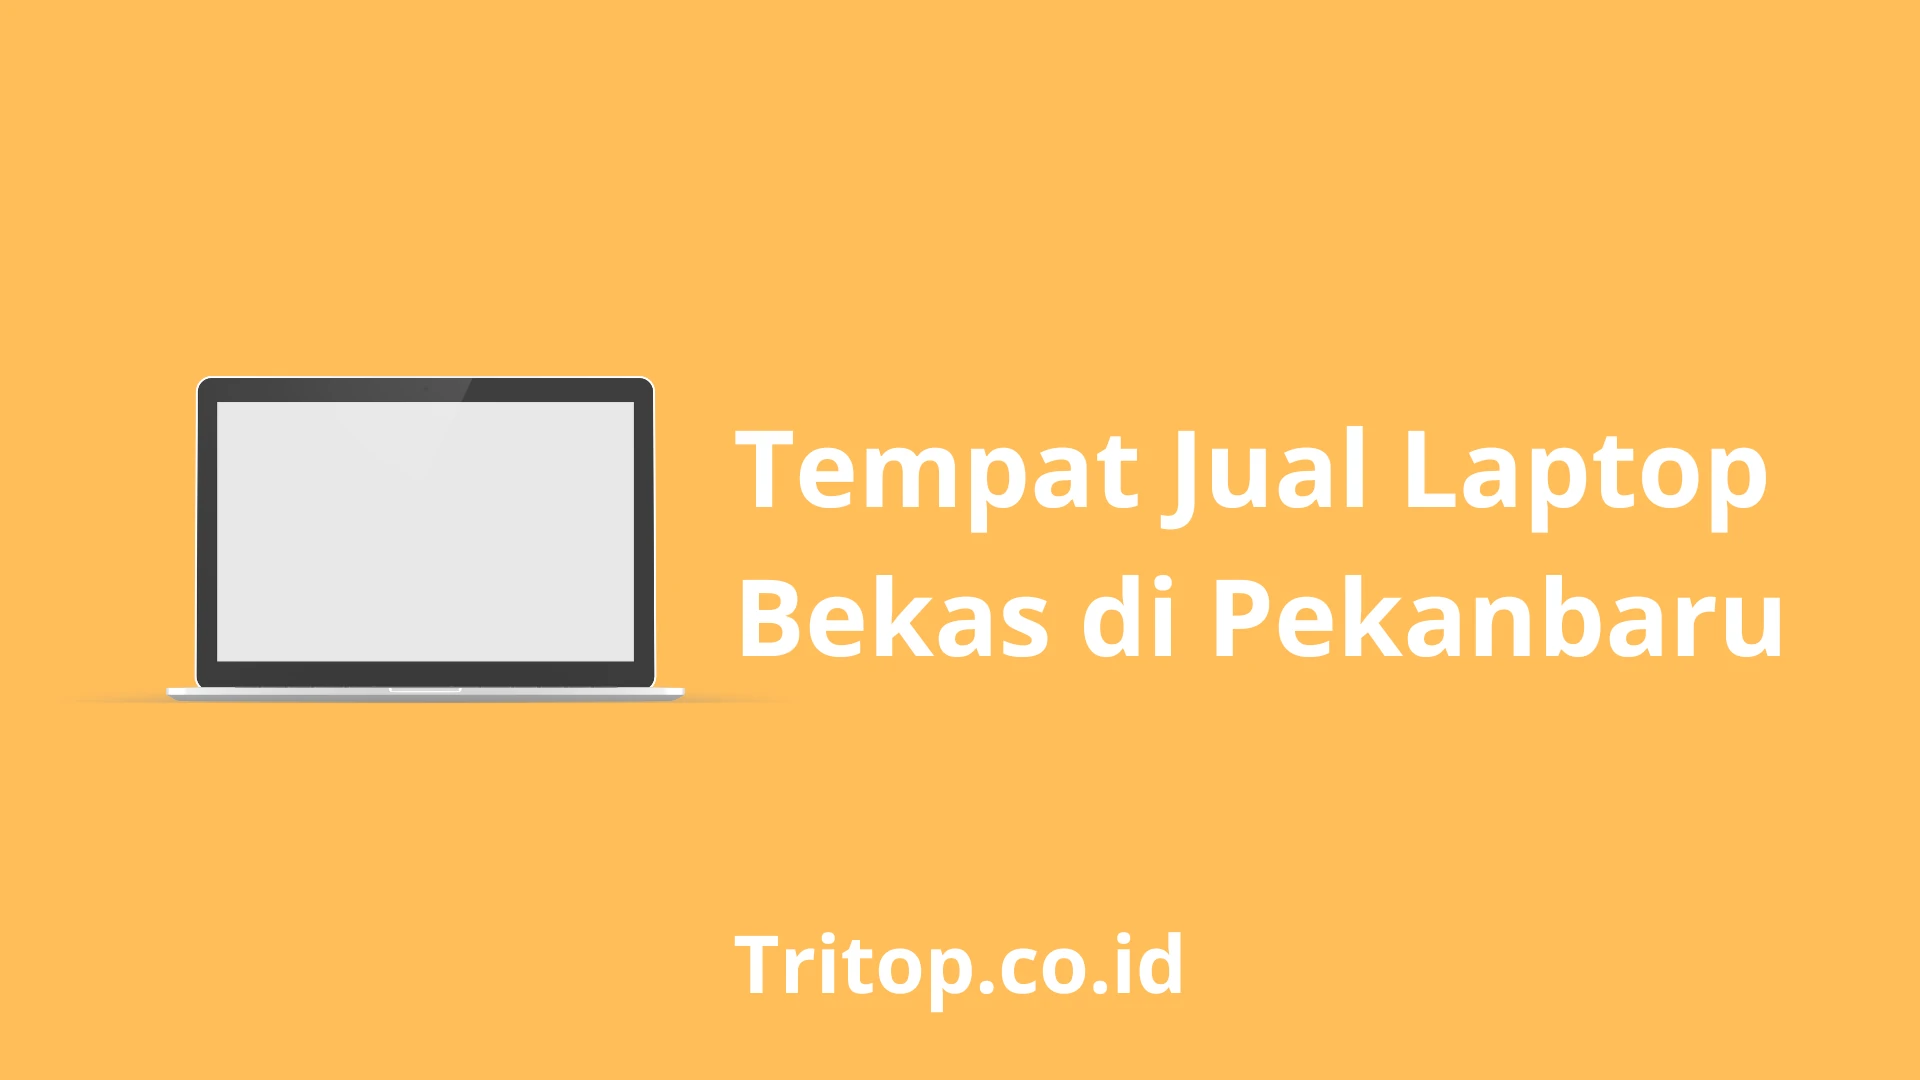 Tempat Jual Laptop Bekas di Pekanbaru tritop.co.id